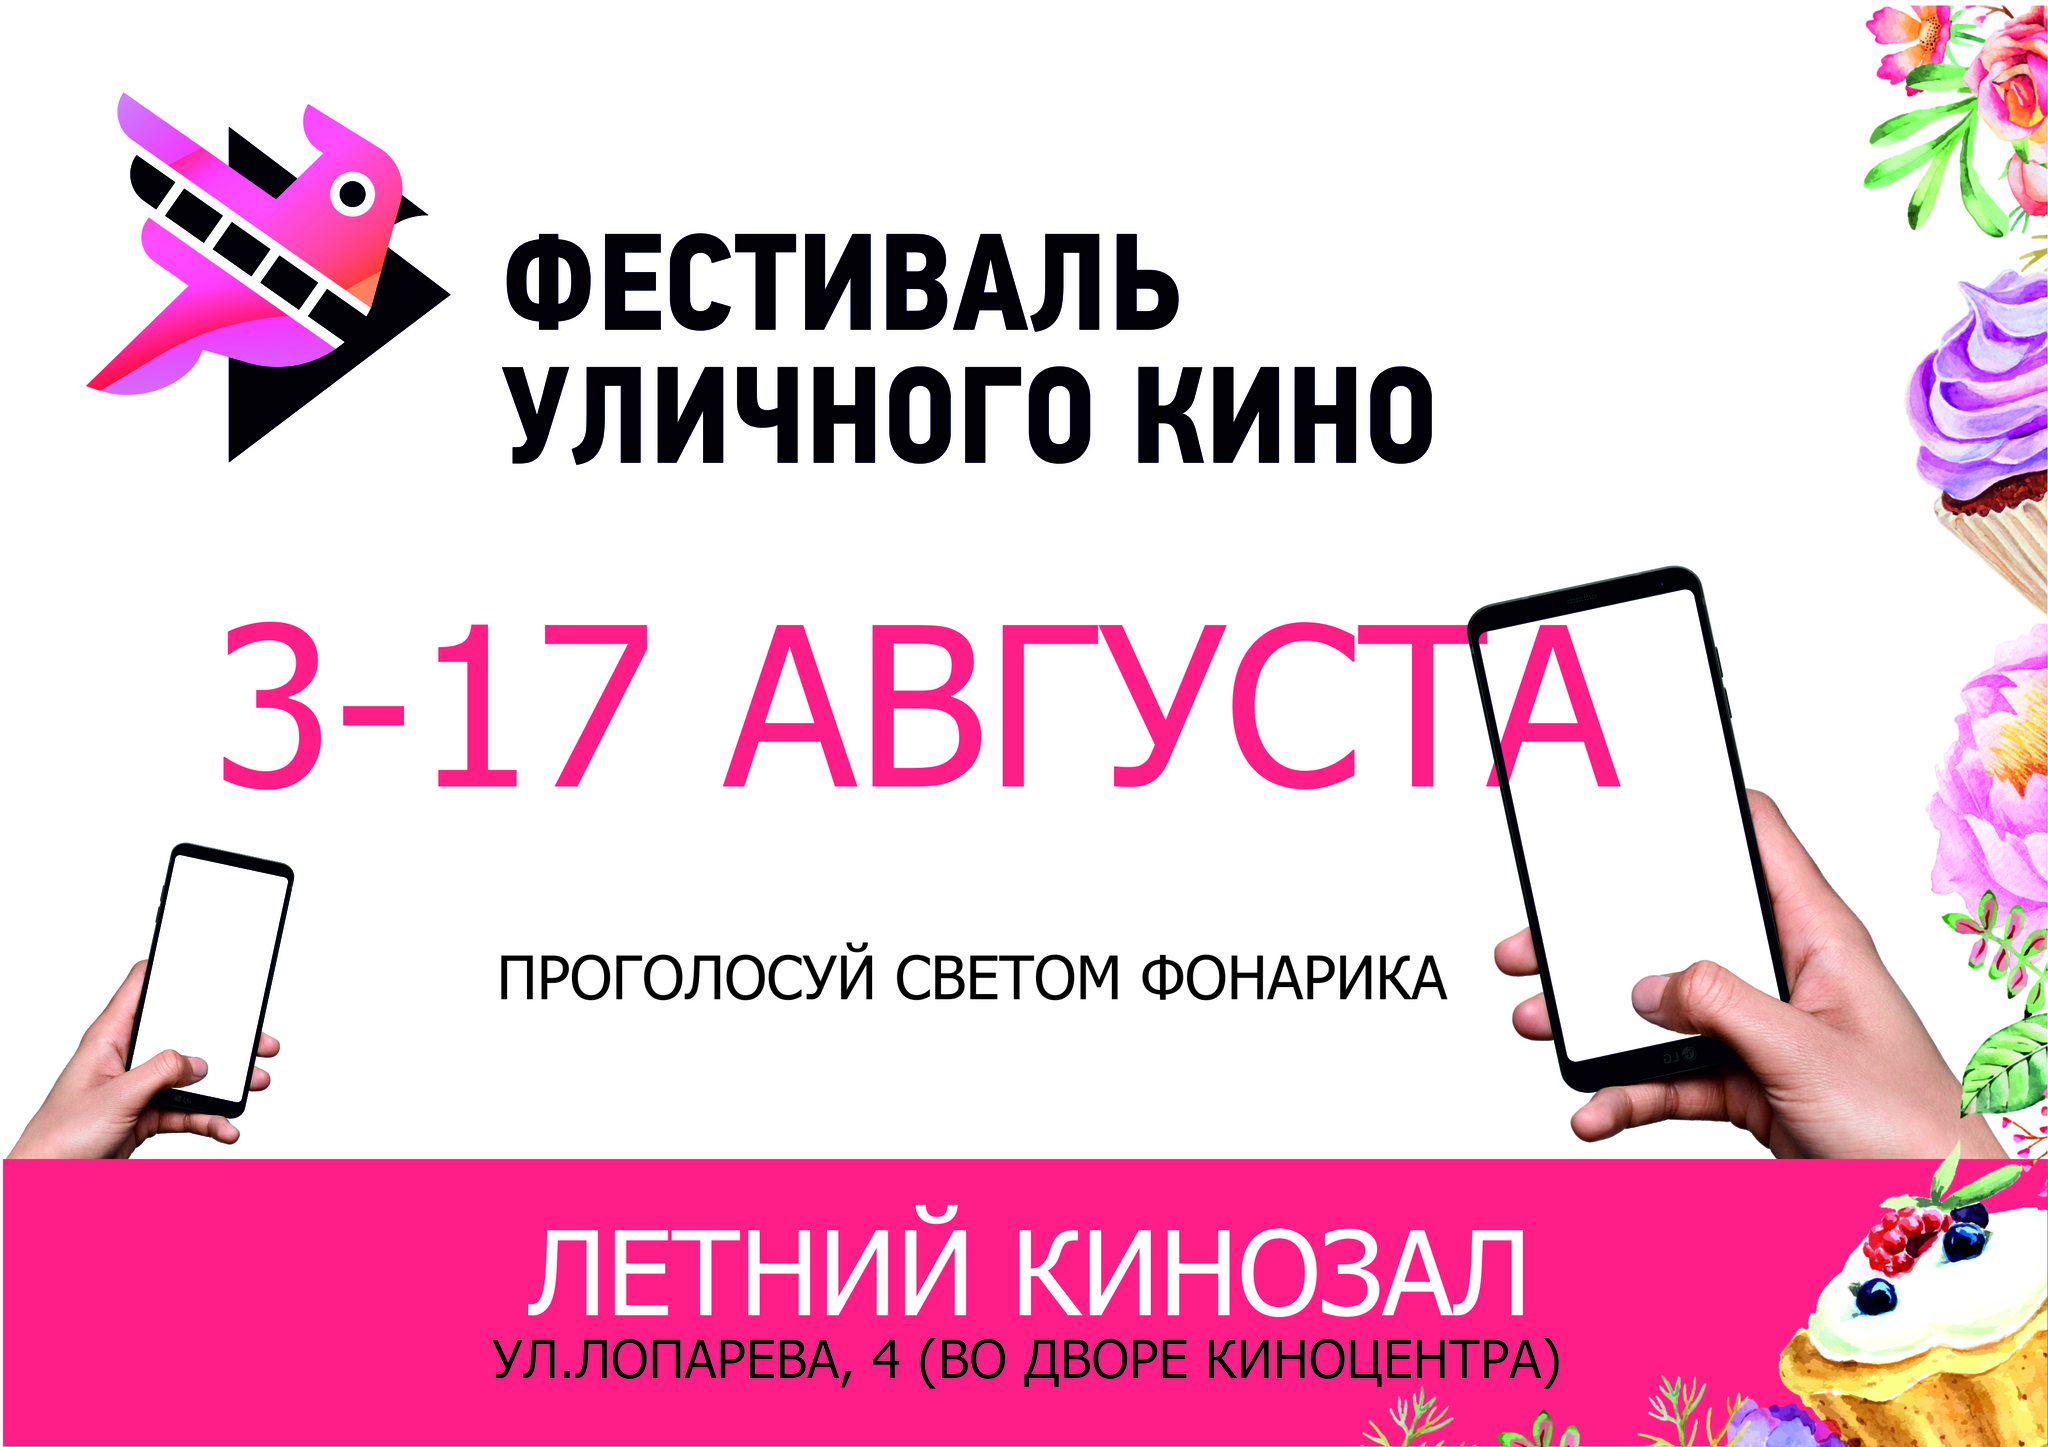 В Ханты-Мансийске состоится Фестиваль уличного кино